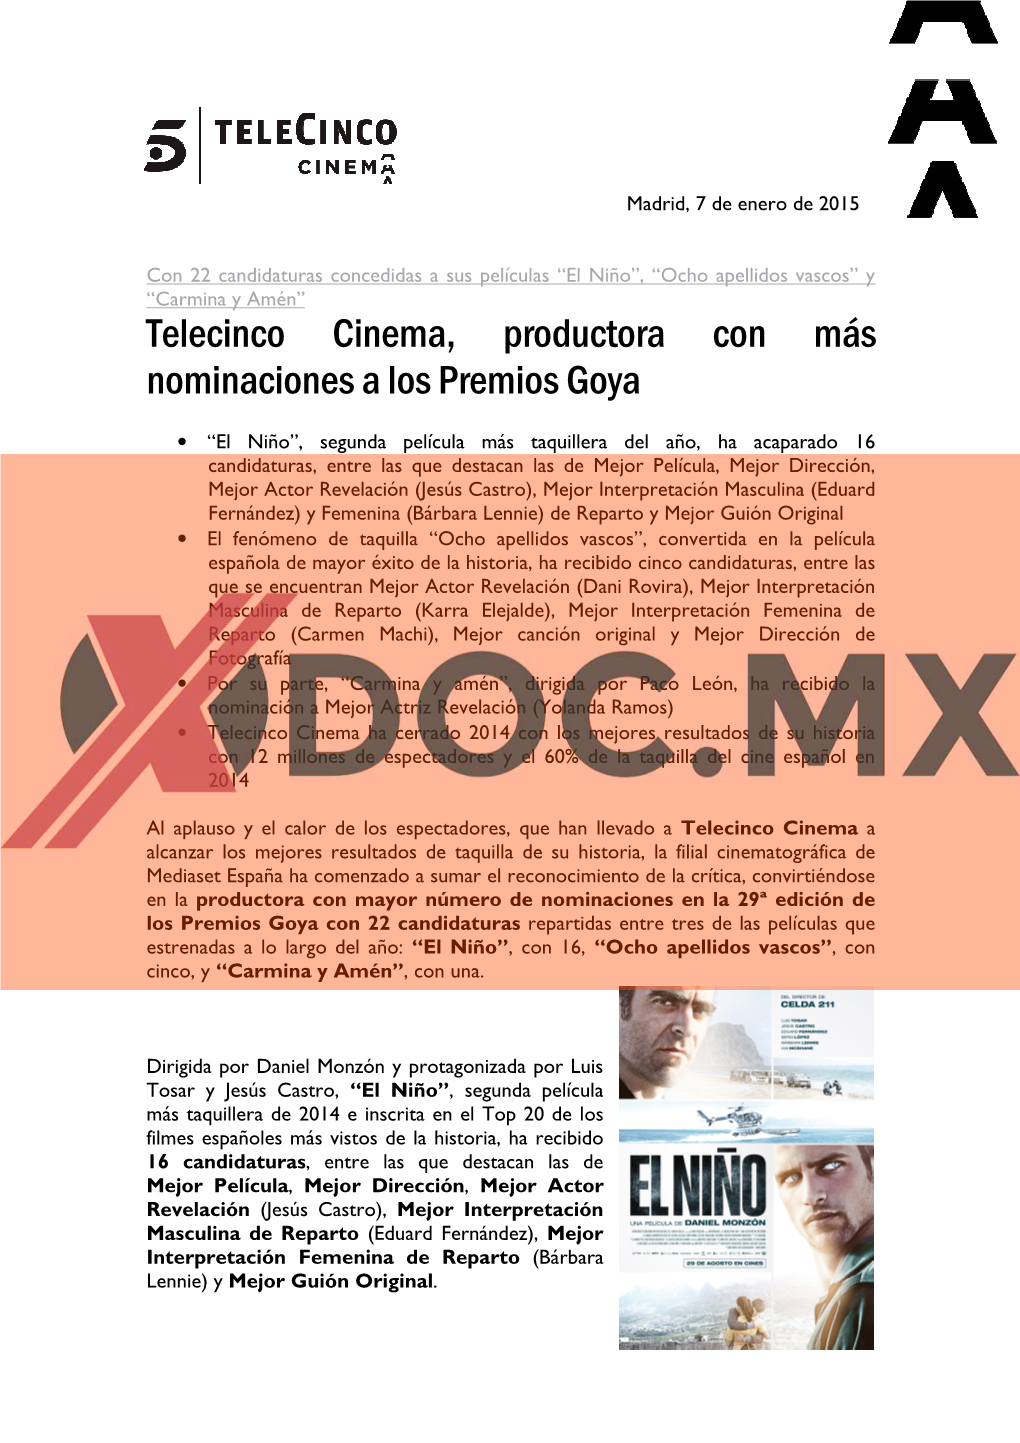 Telecinco Cinema, Productora Con Más Nominaciones a Los Premios Goya